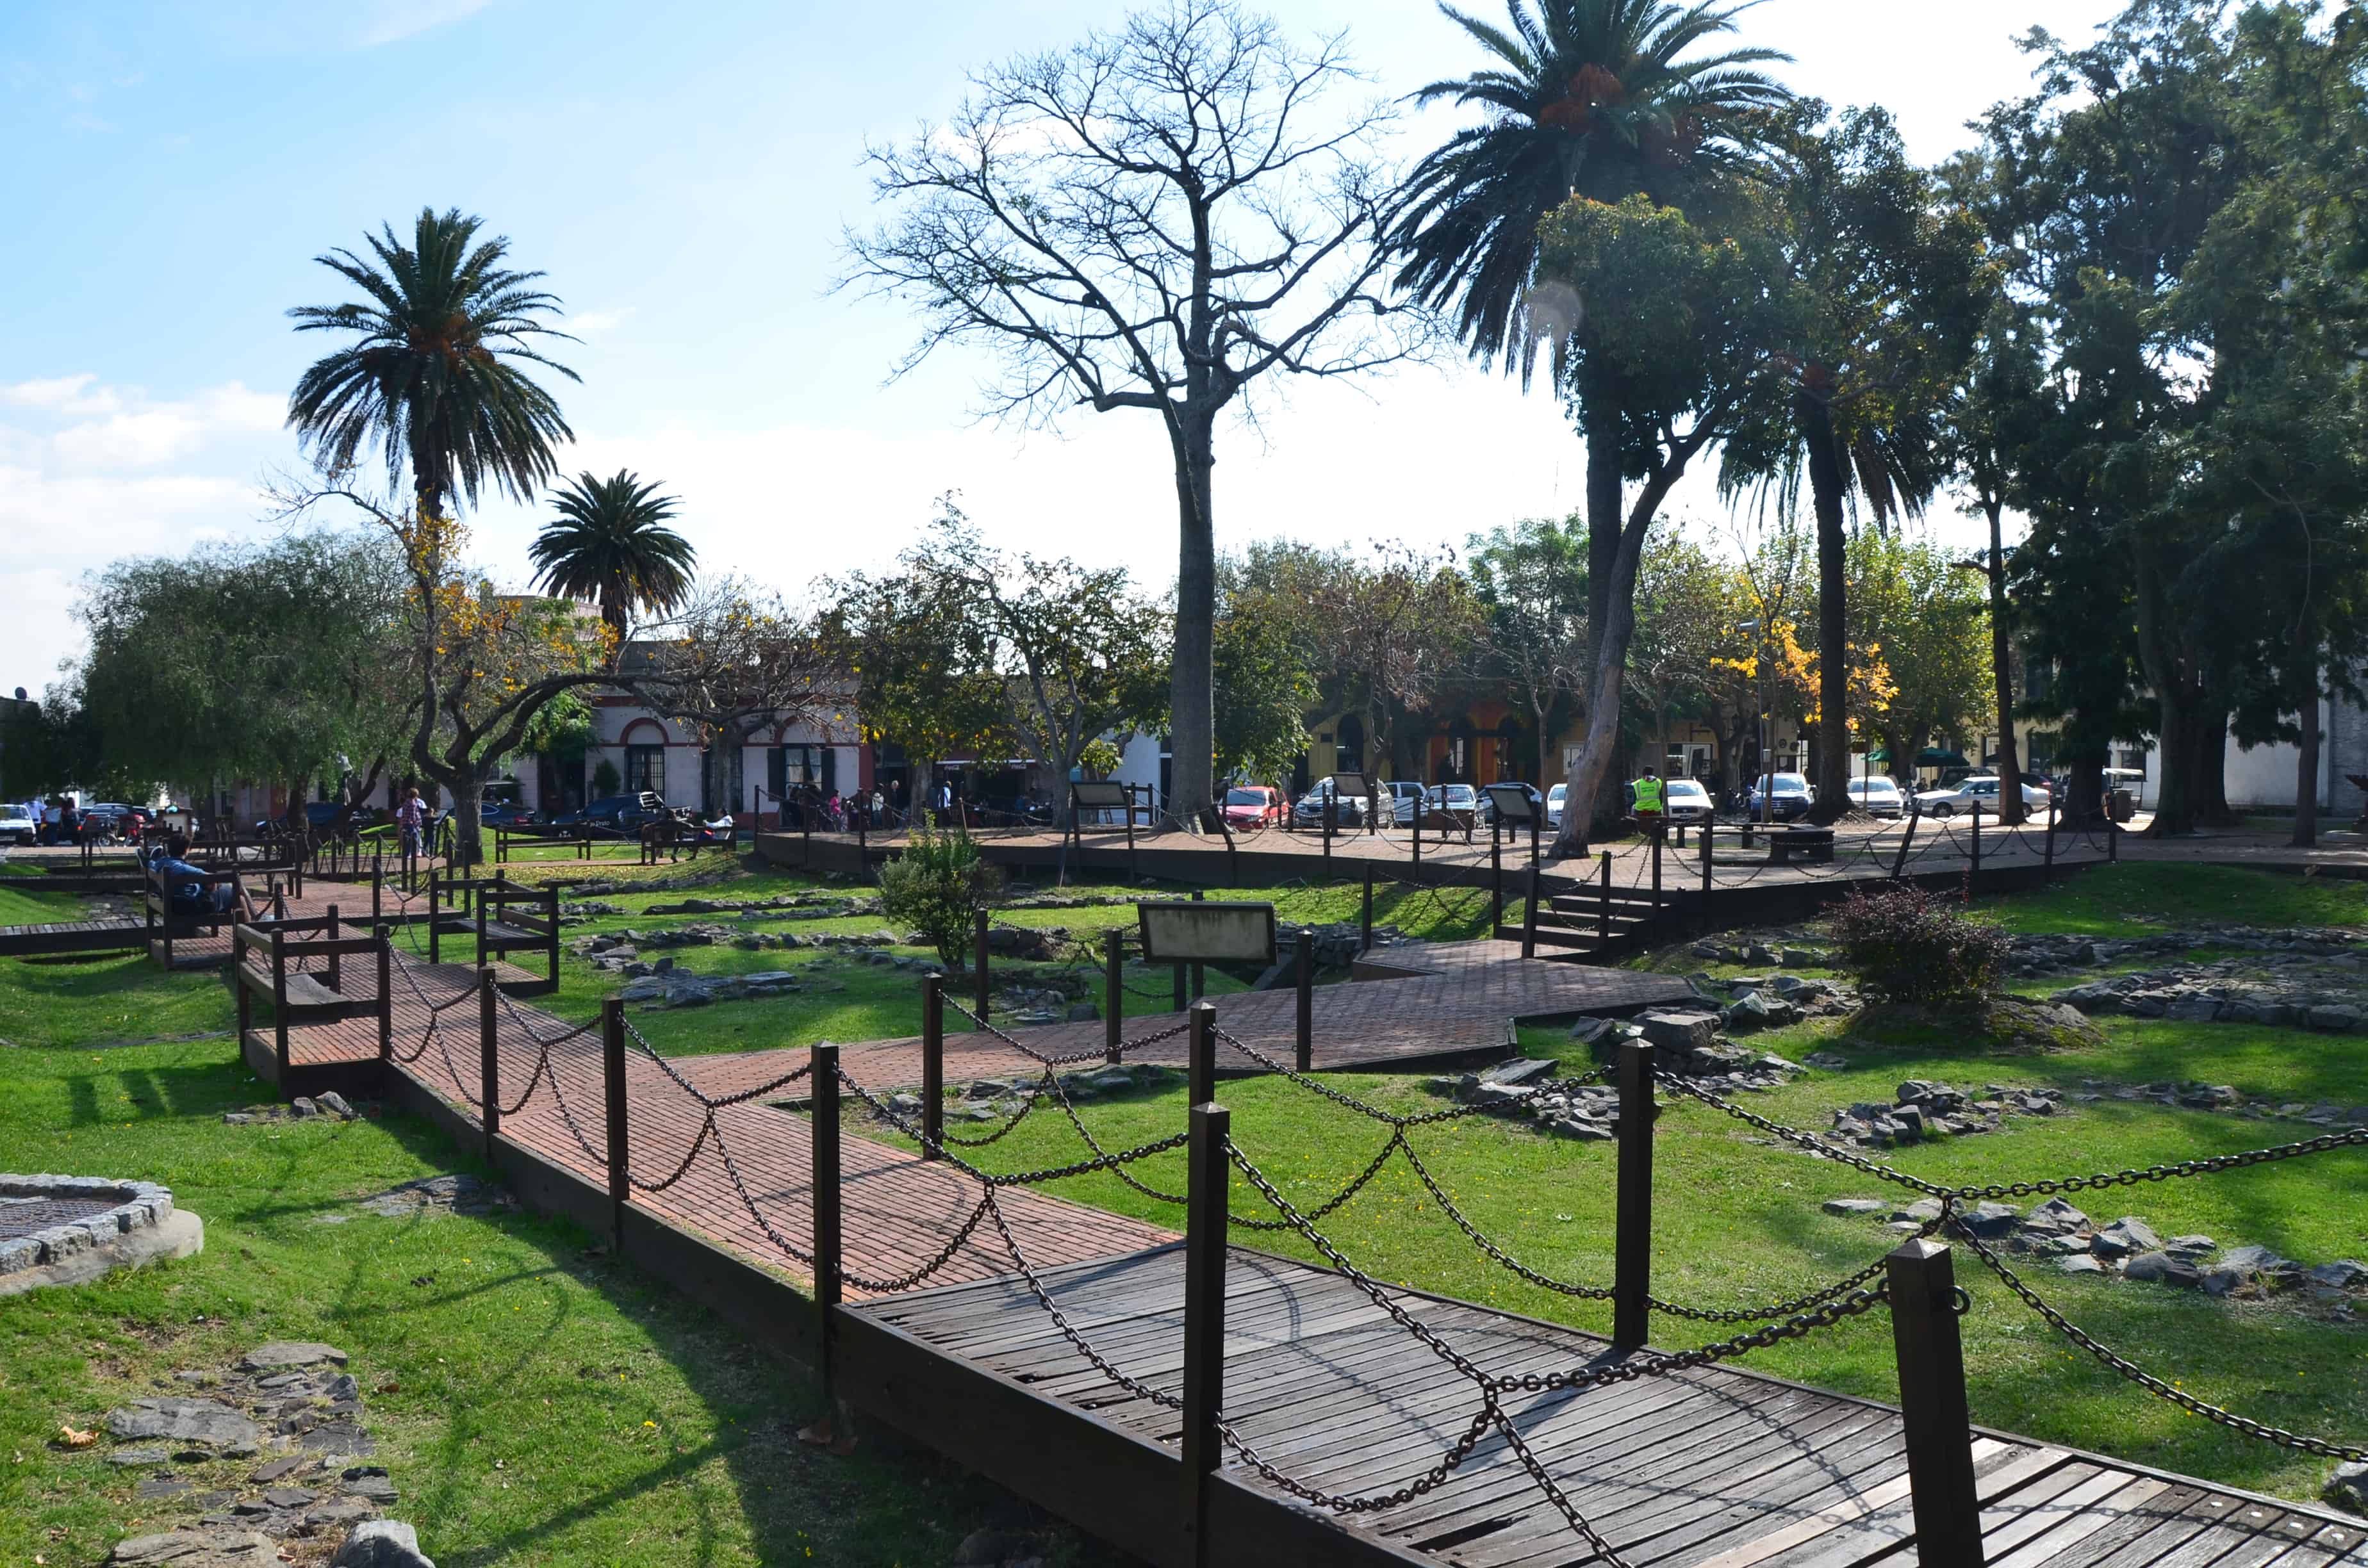 Plaza de Armas in Colonia del Sacramento, Uruguay